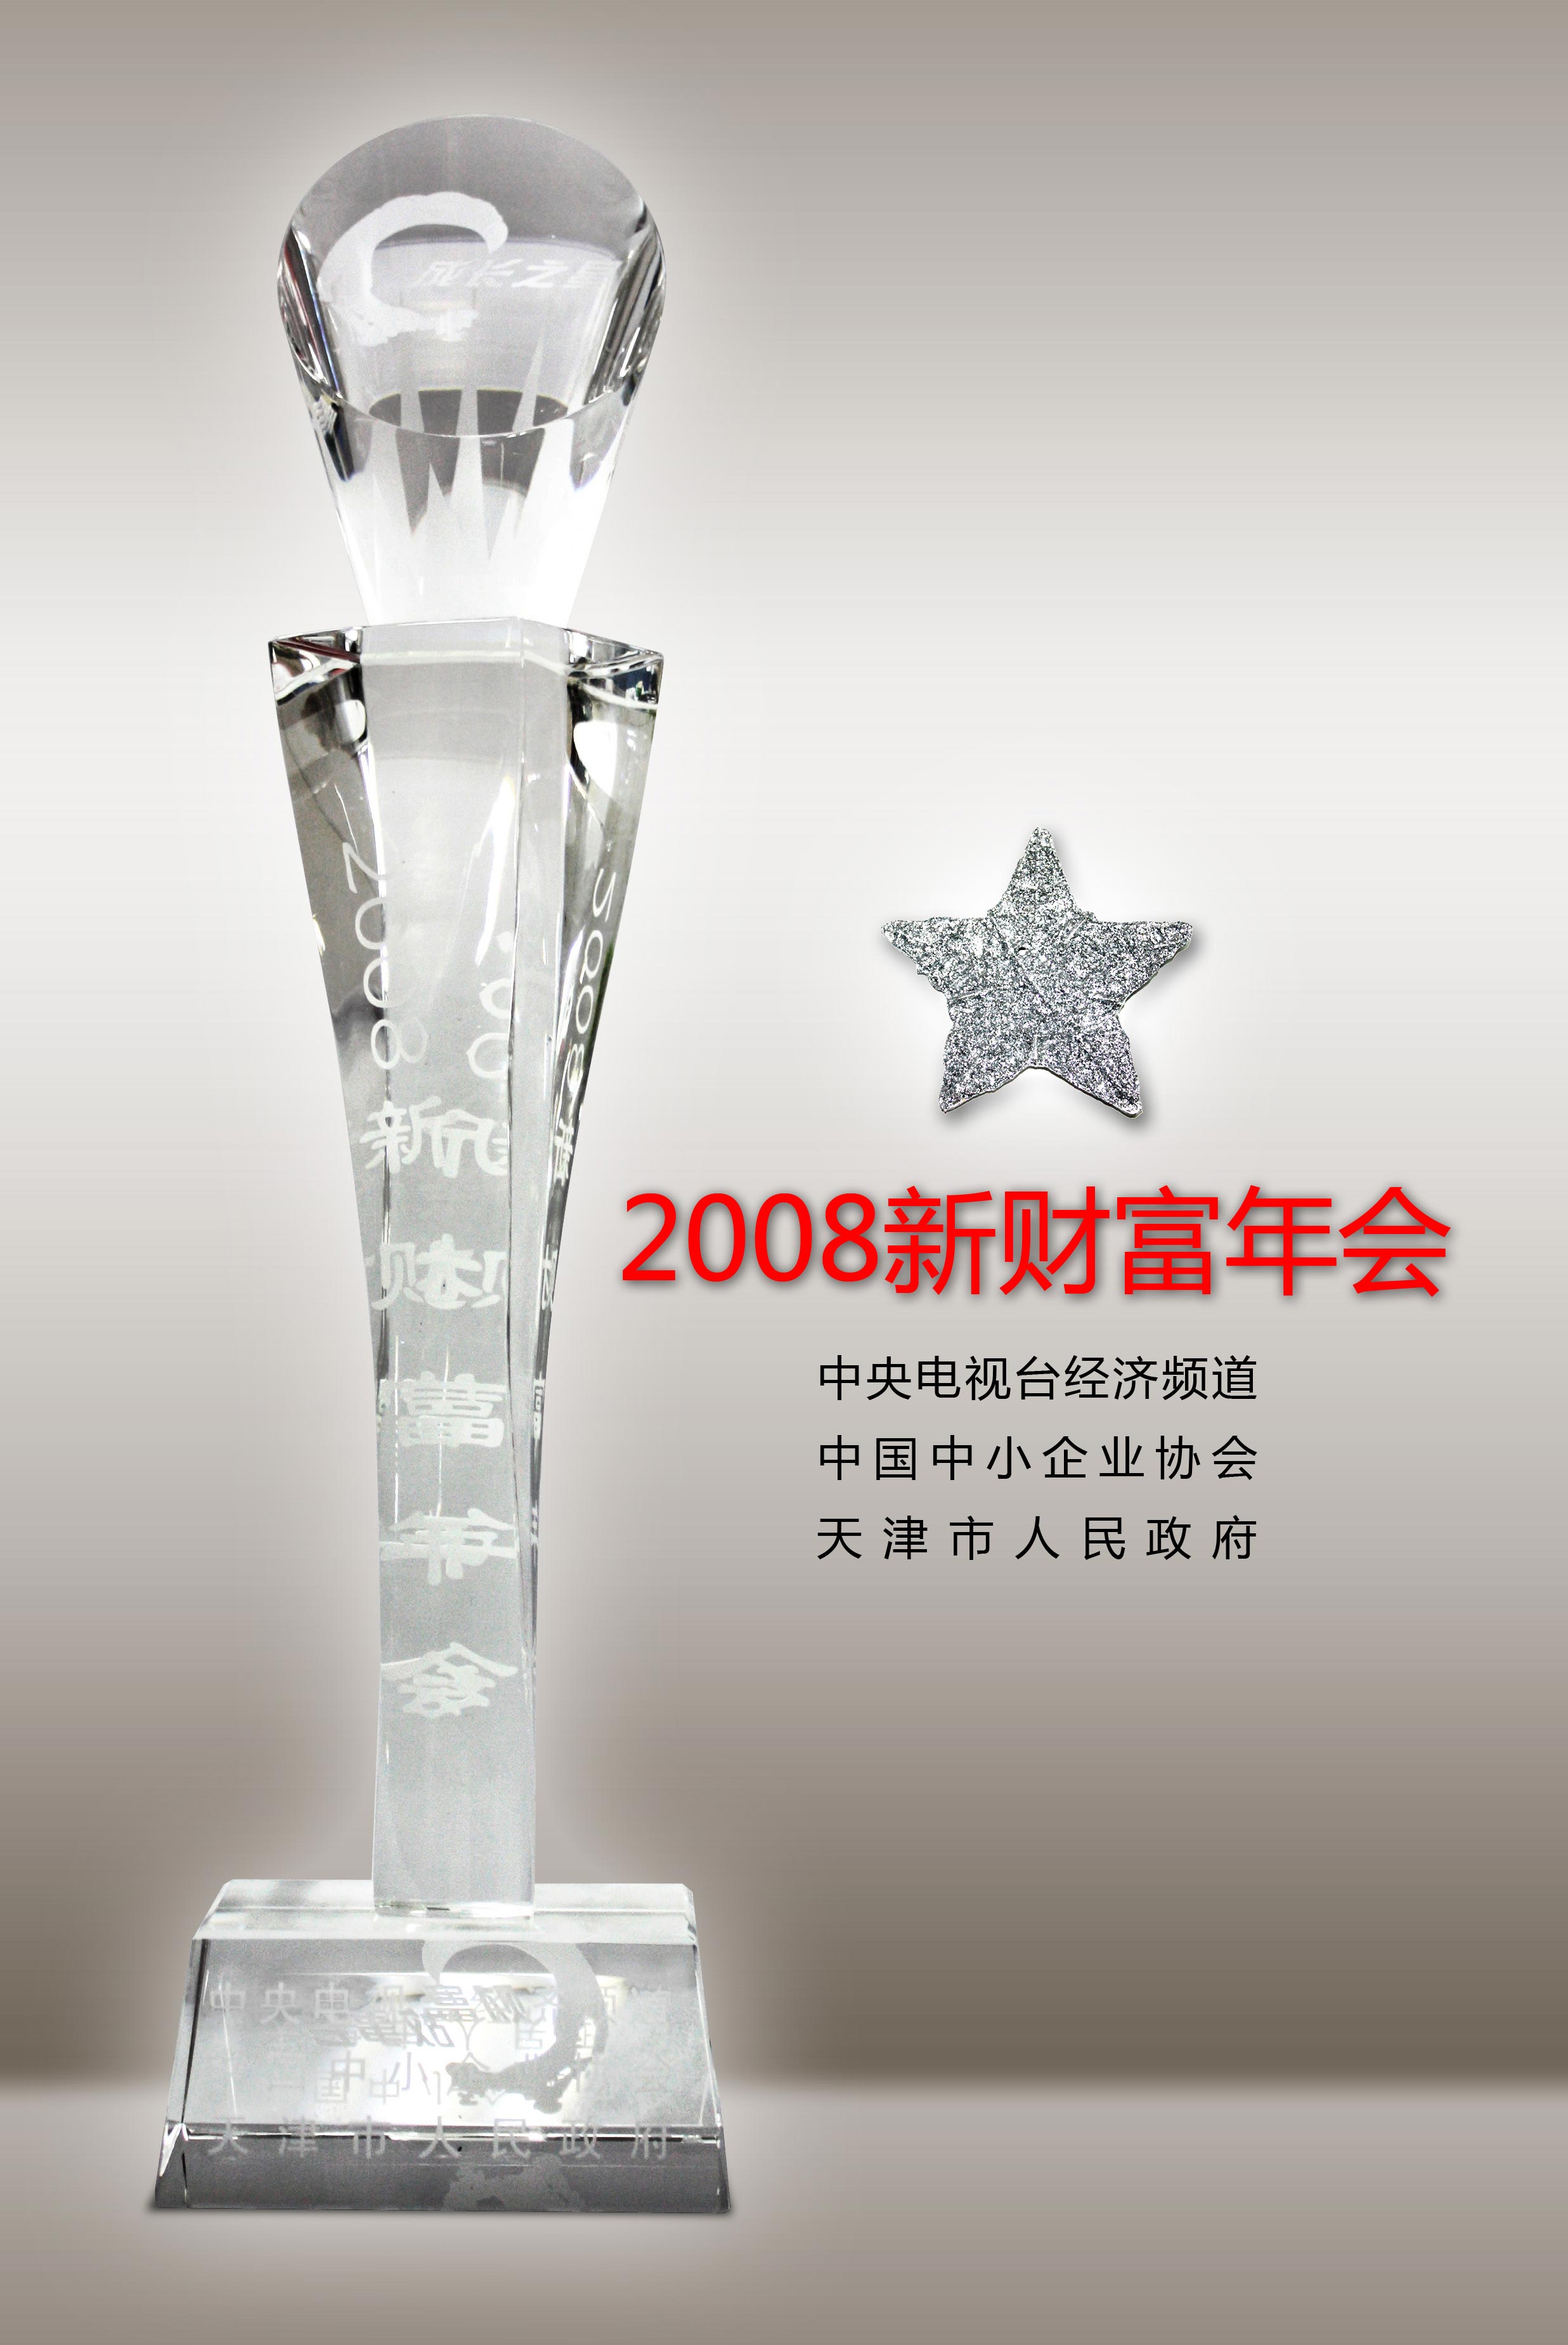 2008/3/7中国企业十大成长之星